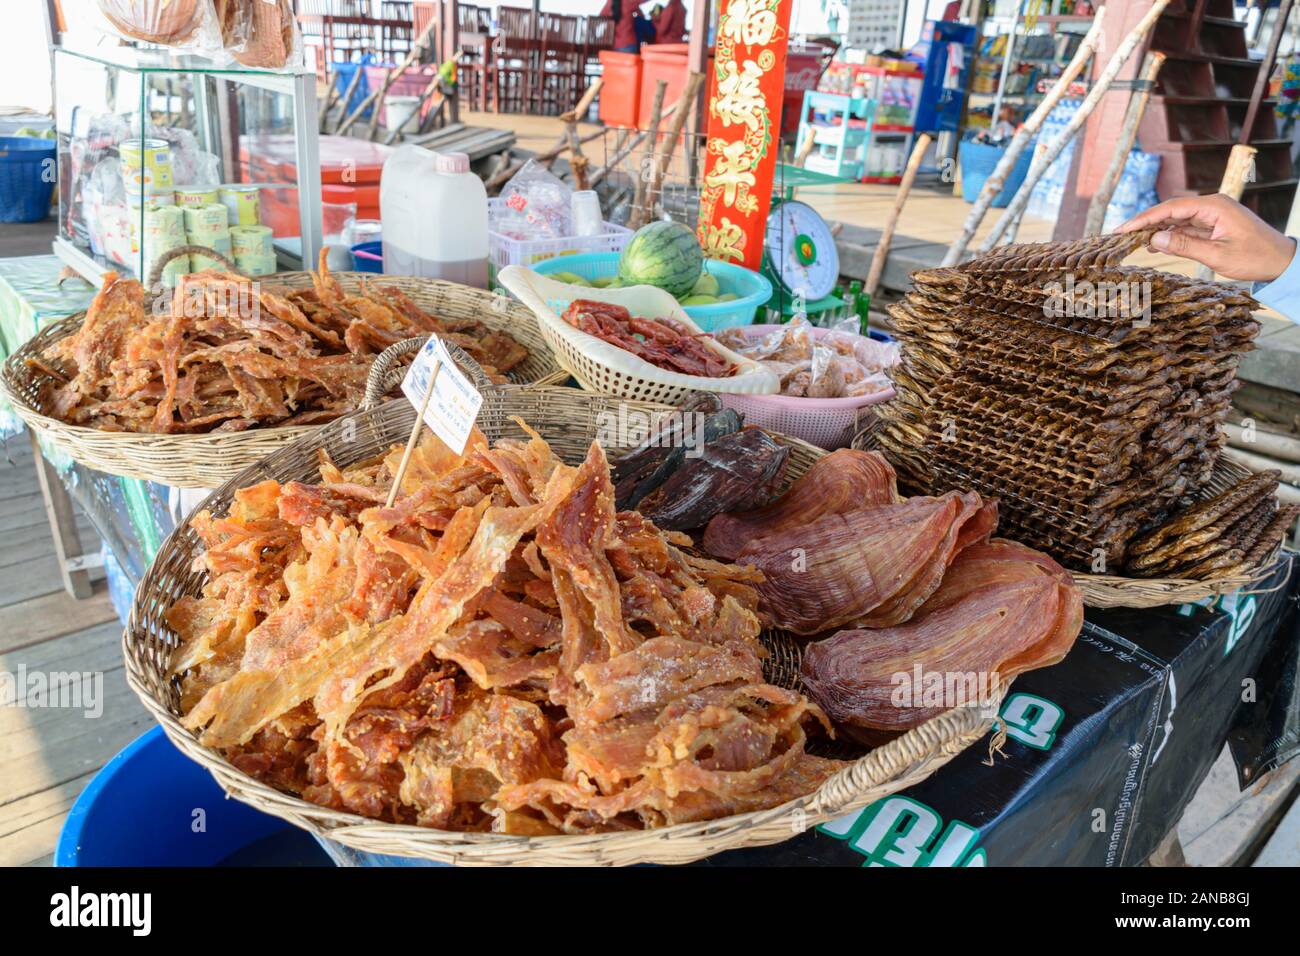 Le Cambodge, Tonle Sap village flottant - Mars 2016 : Les aliments séchés traditionnelle cambodgienne à vendre dans une boutique dans le magasin général flottant Banque D'Images